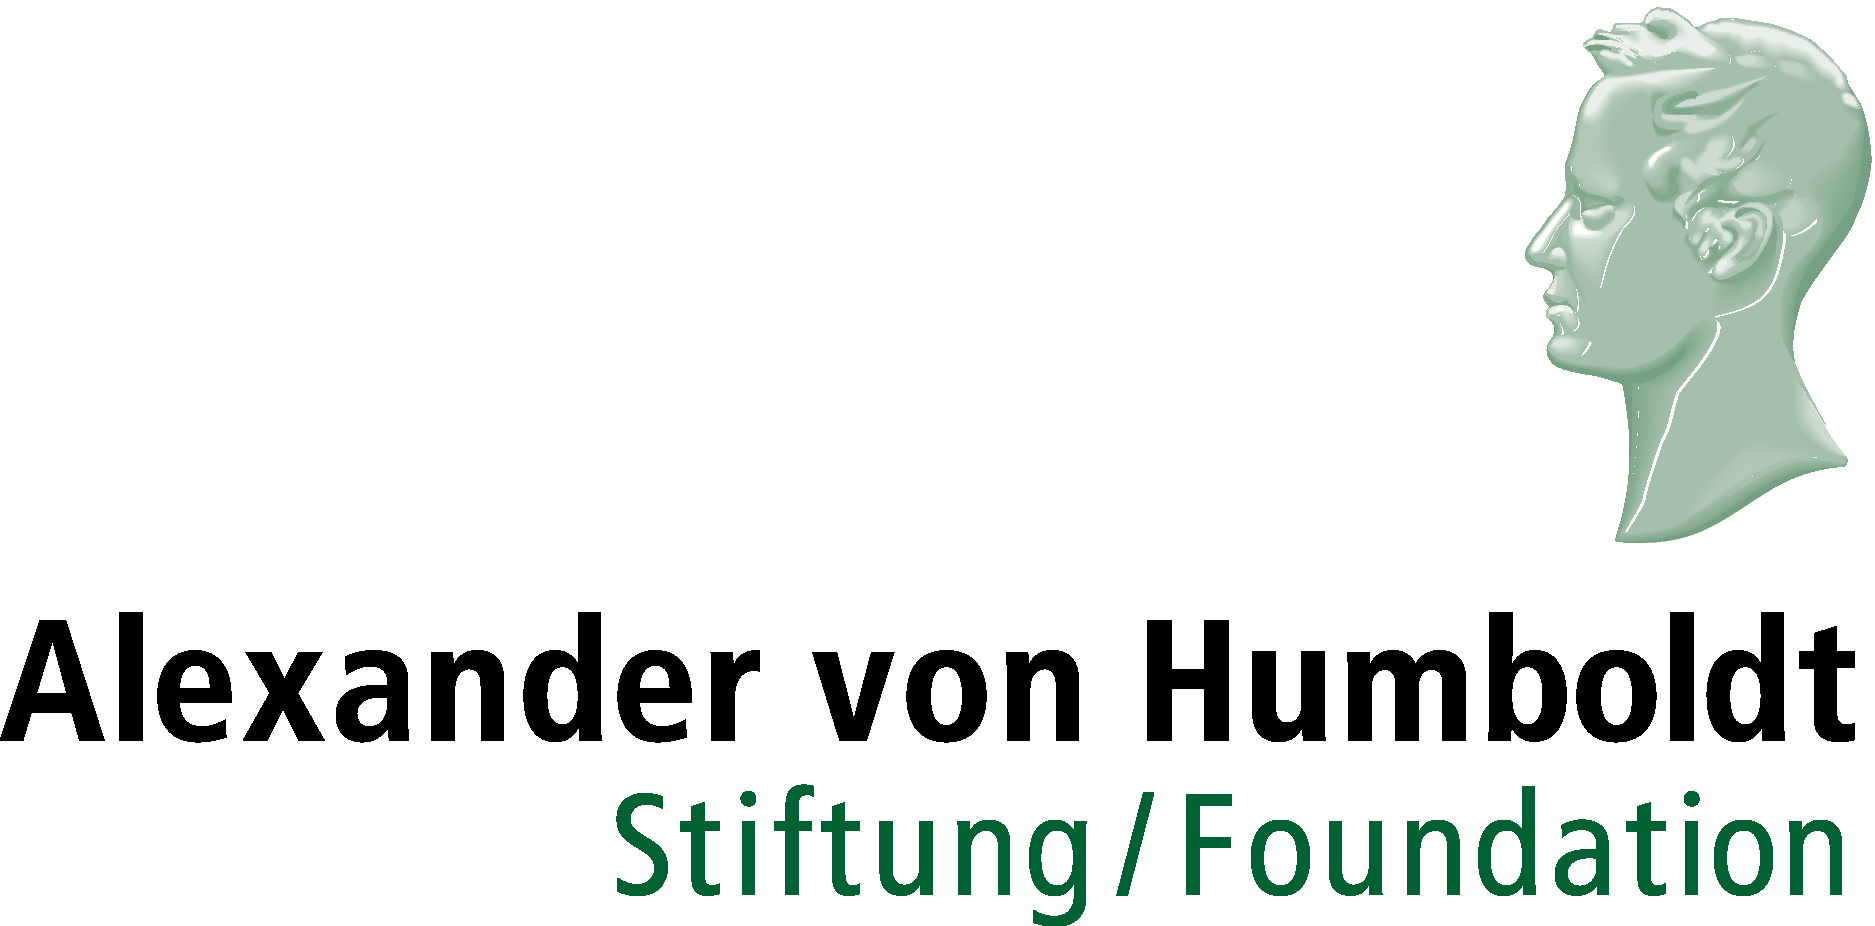 Alexander von Humboldt Foundation Logo Vector